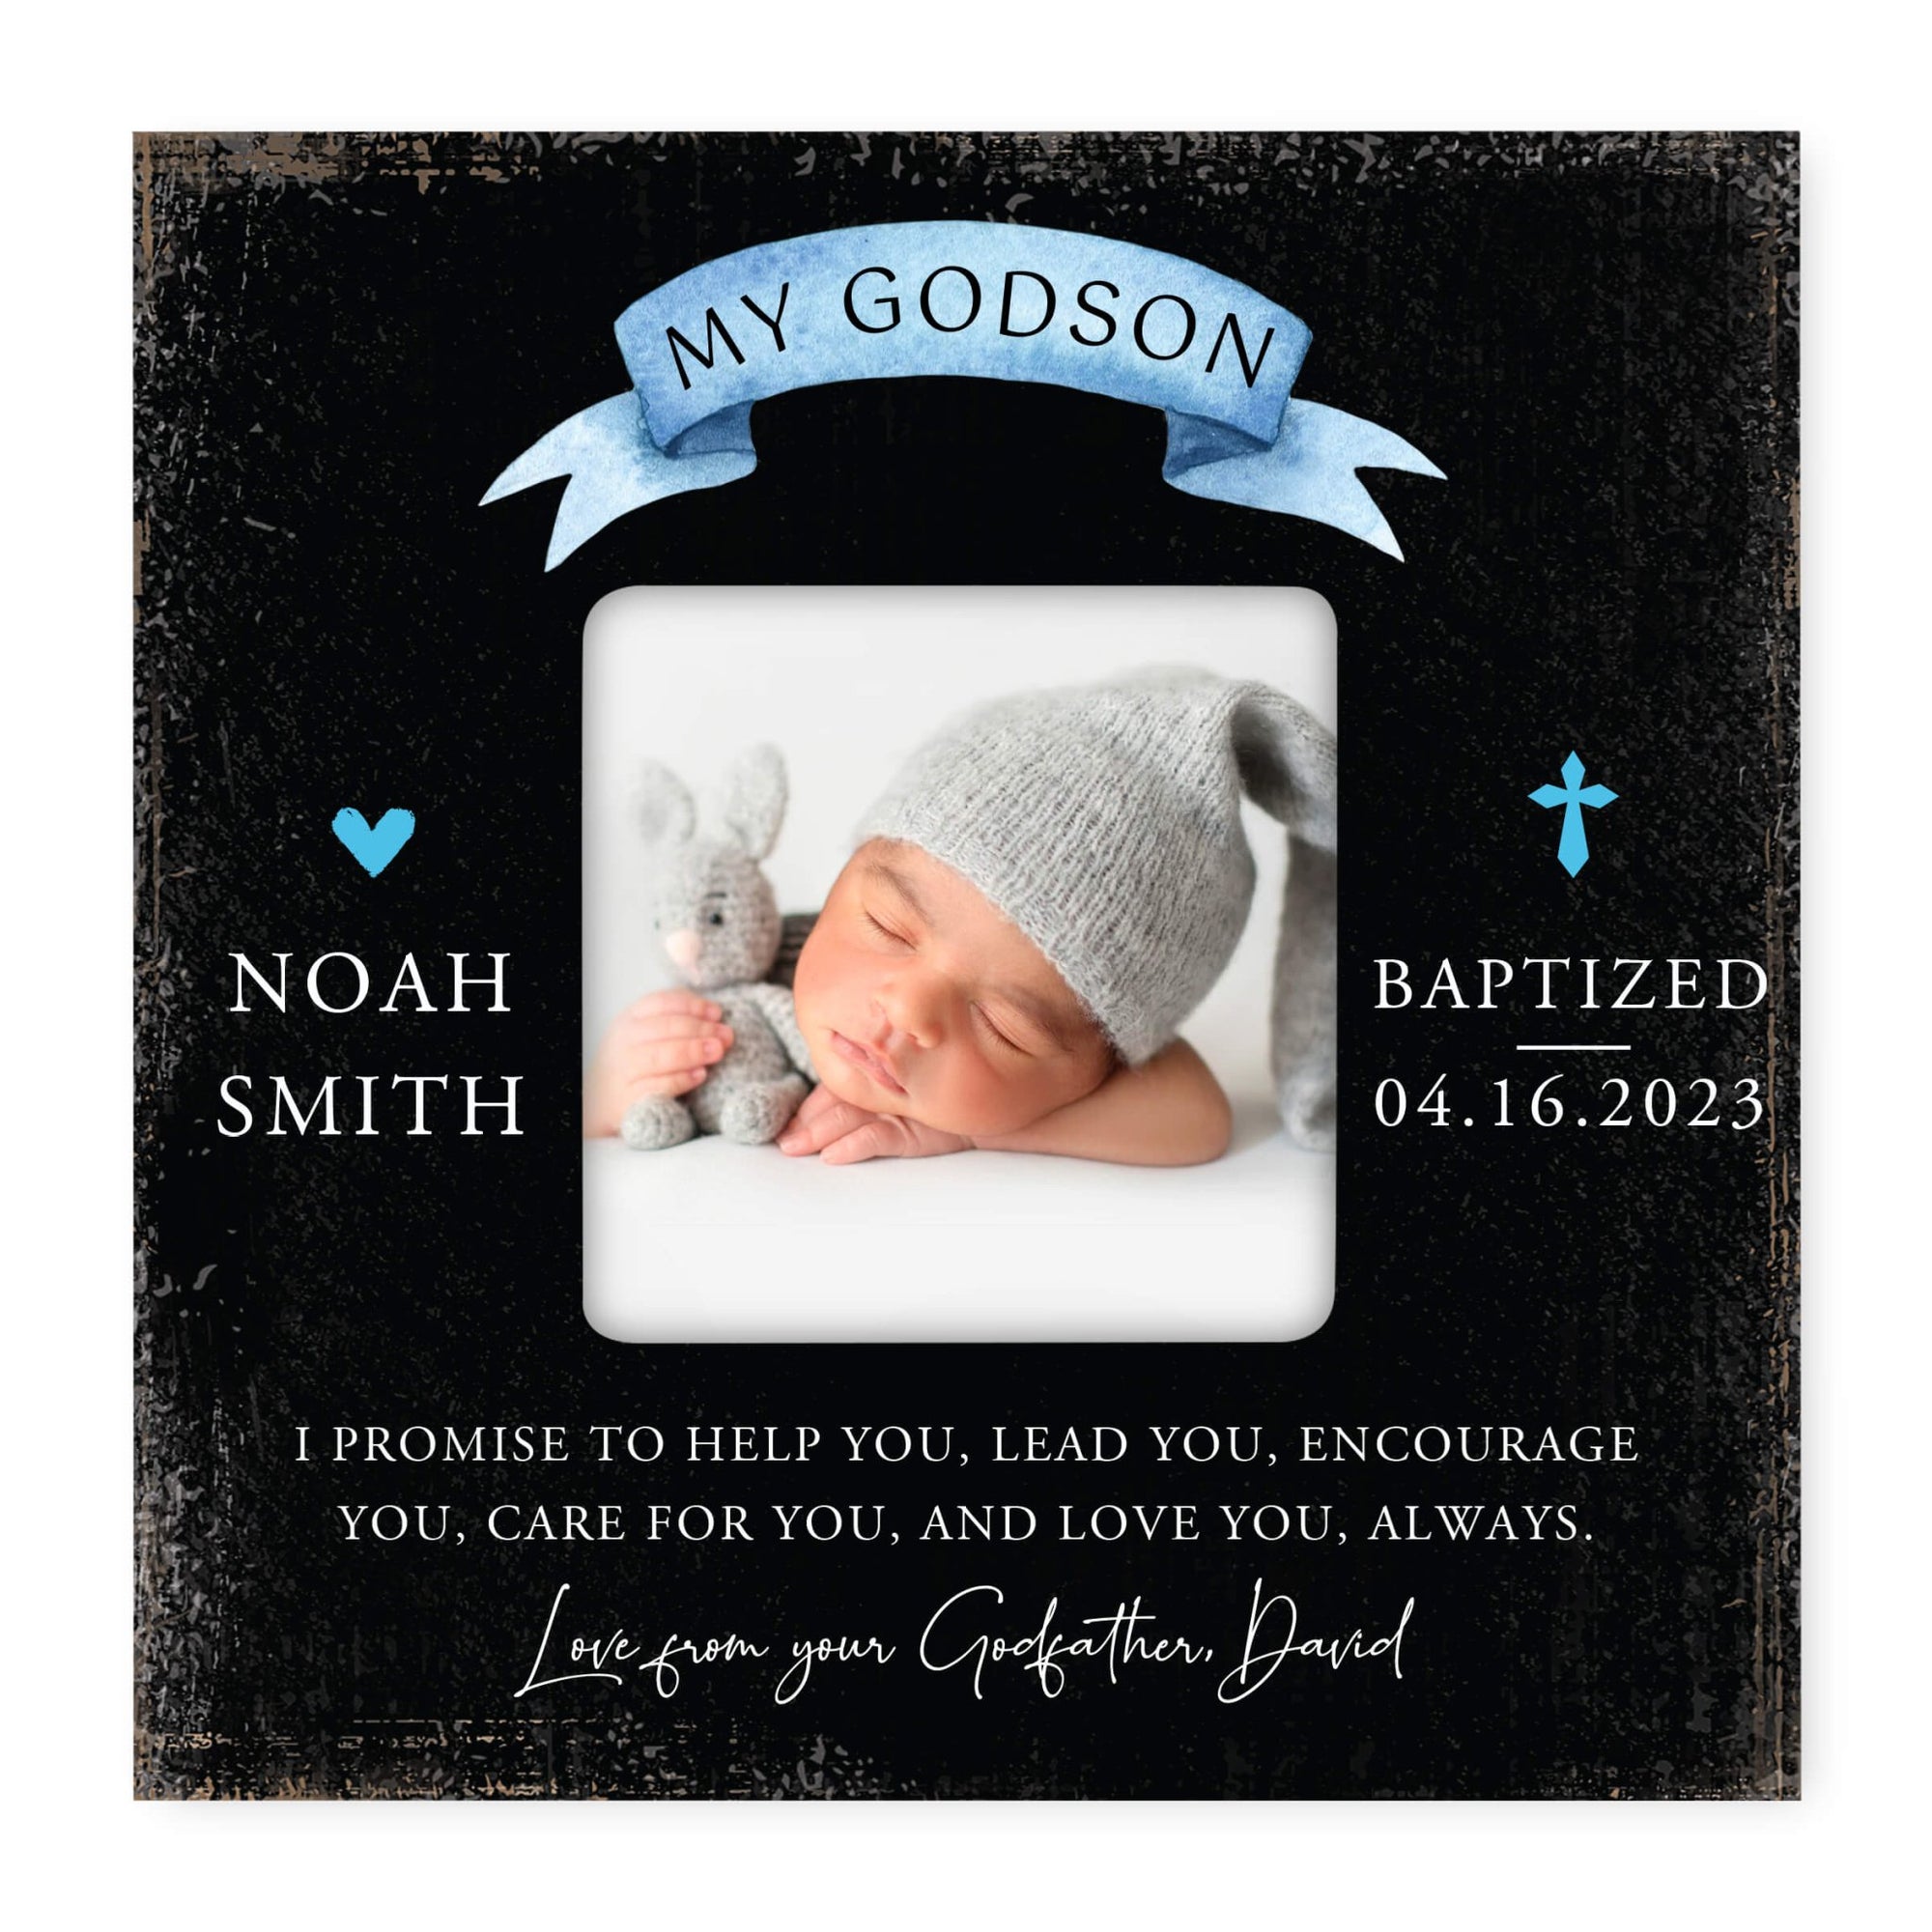 Personalized Godson Photo Frame - May God Bless You - LifeSong Milestones